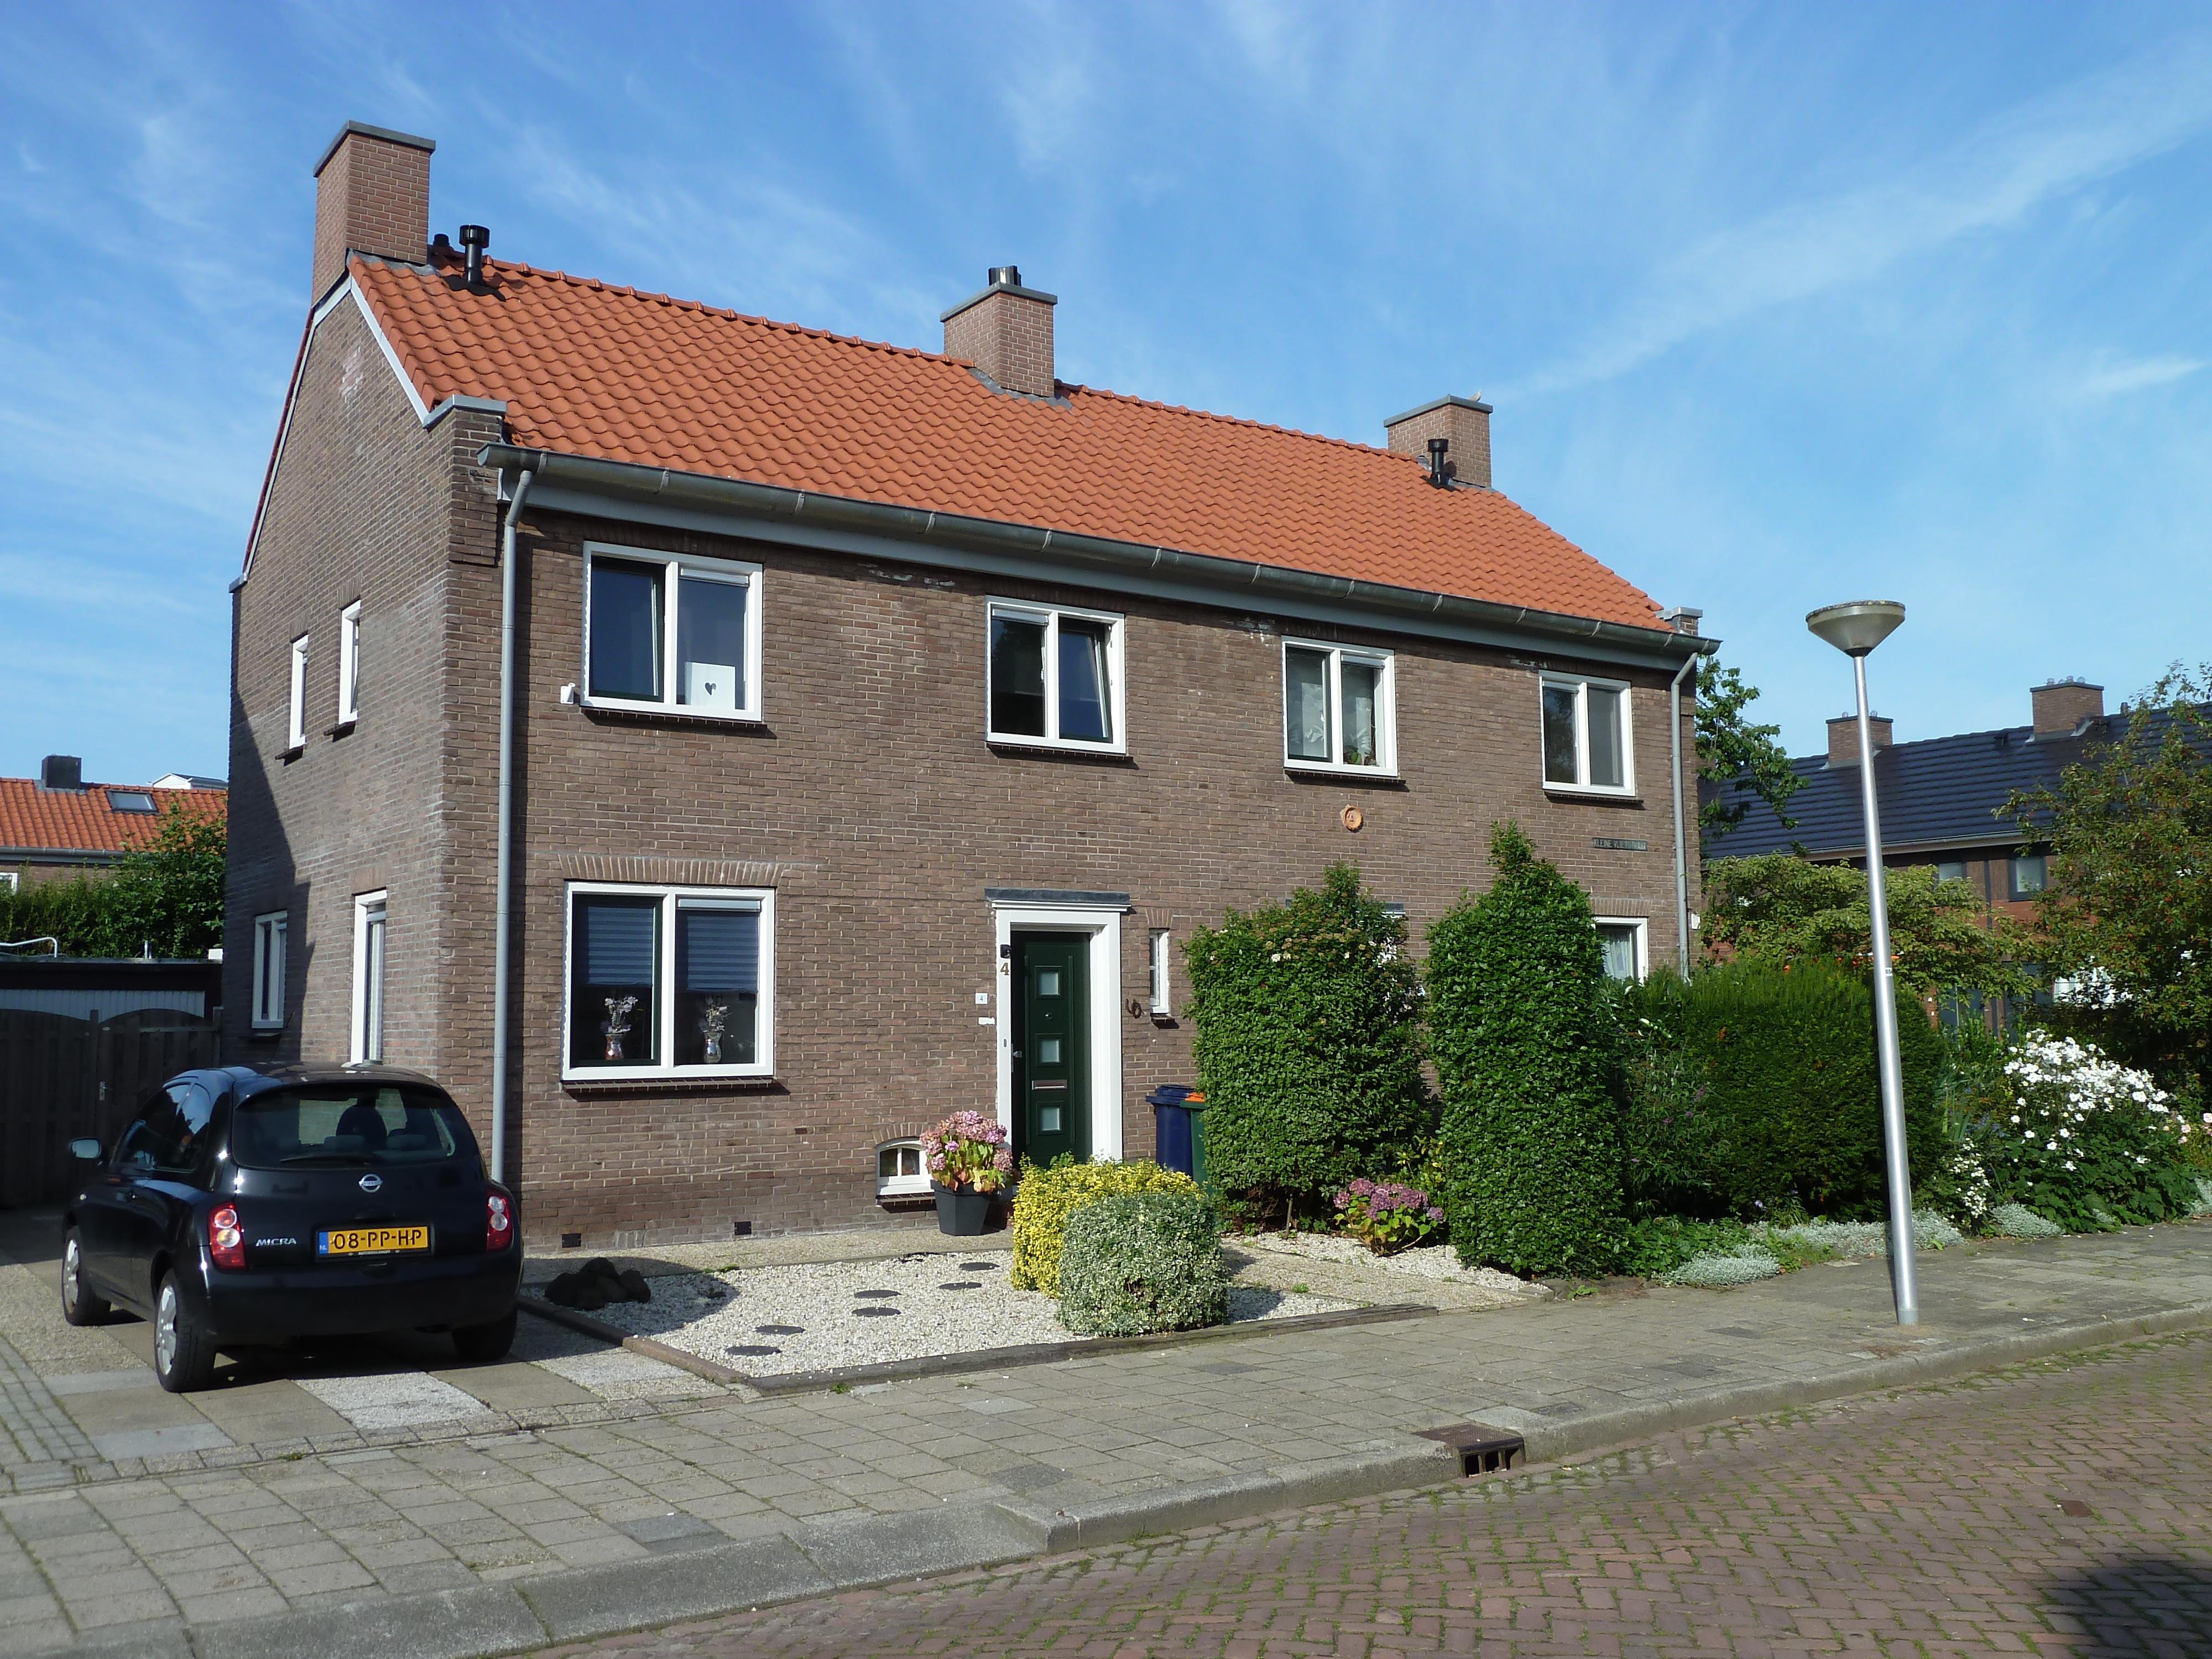 Kleine Vlietstraat 2, 2922 XB Krimpen aan den IJssel, Nederland